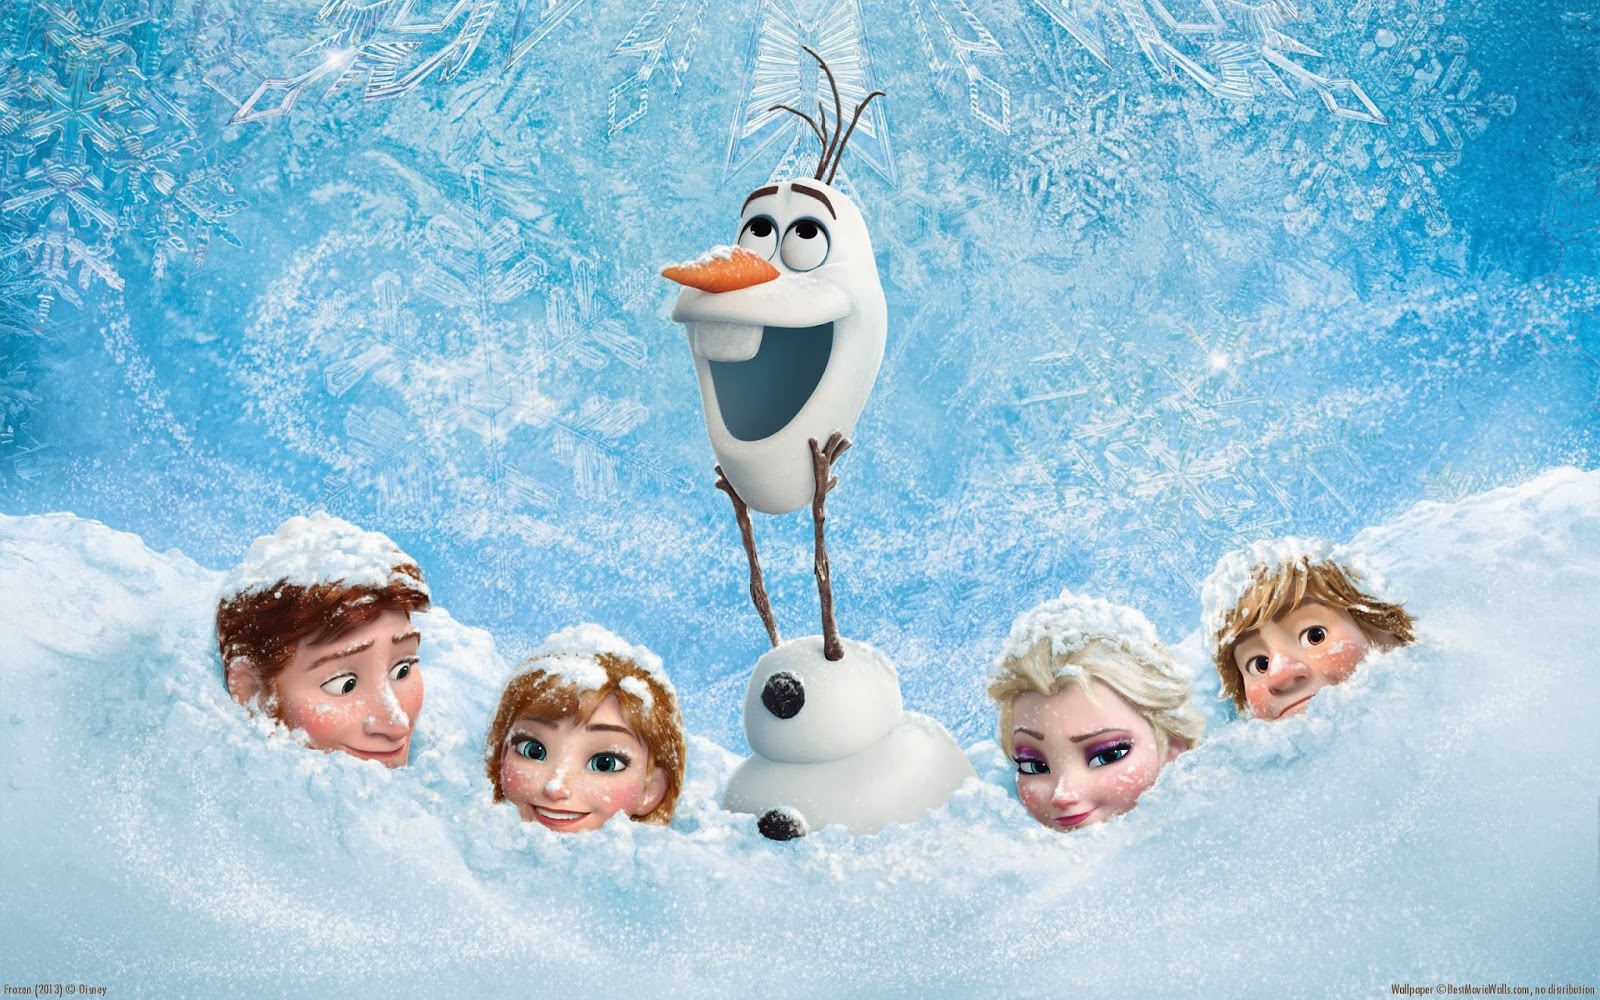 Xem Phim Nữ Hoàng Băng Giá - Frozen (2013) - online truc tuyen vietsub mien phi hinh anh 3